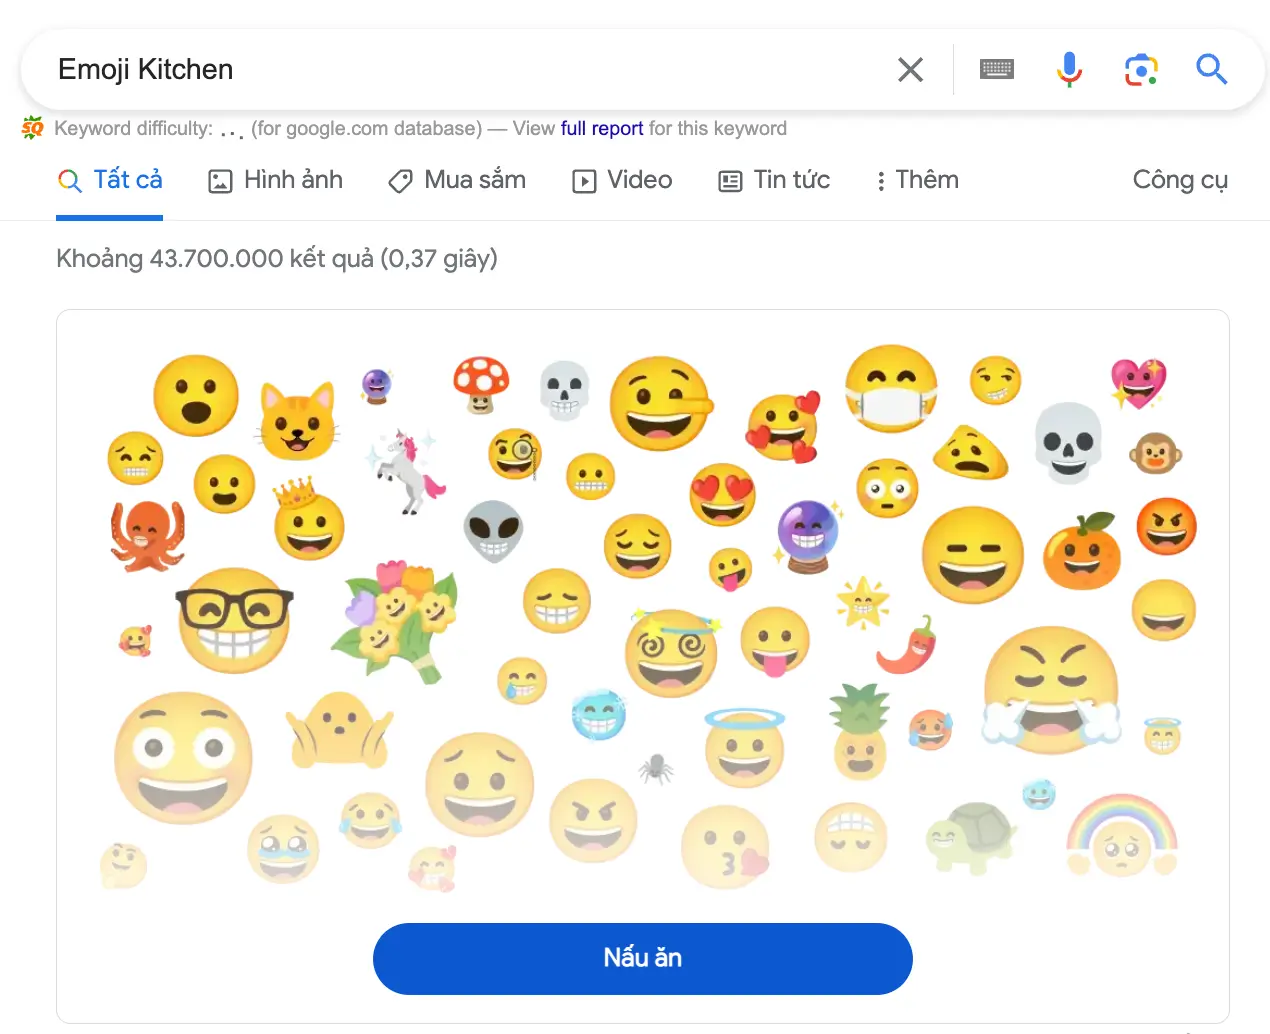 Emoji Kitchen là gì?